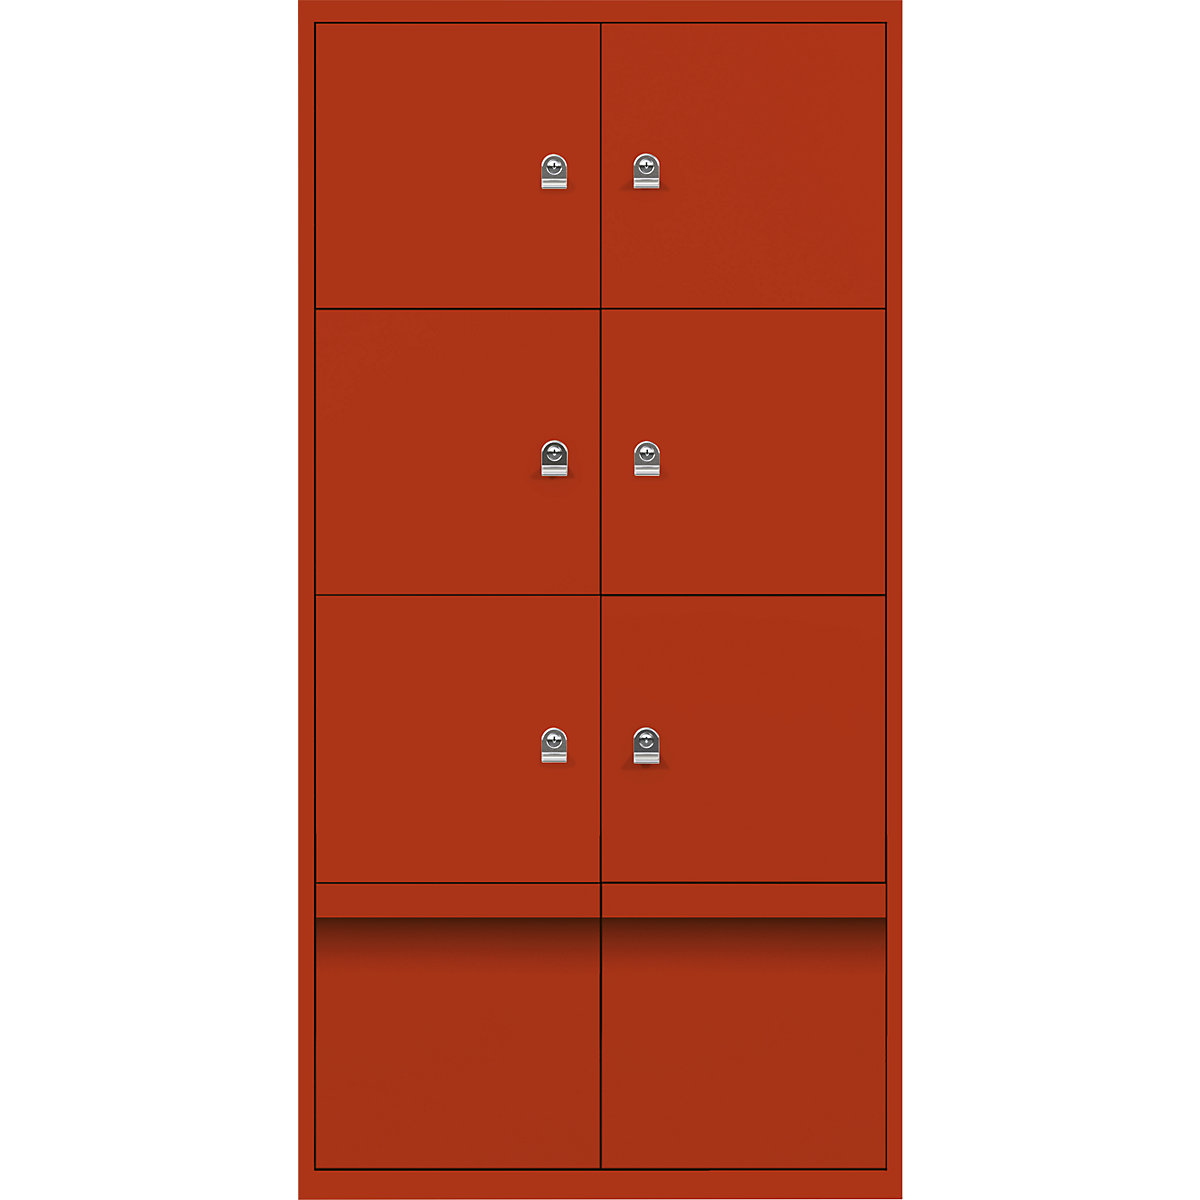 Omara s predelki z zaklepanjem LateralFile™ – BISLEY, 6 predelkov z zaklepanjem in 2 predala, višina po 375 mm, seviljsko rdeče barve-29